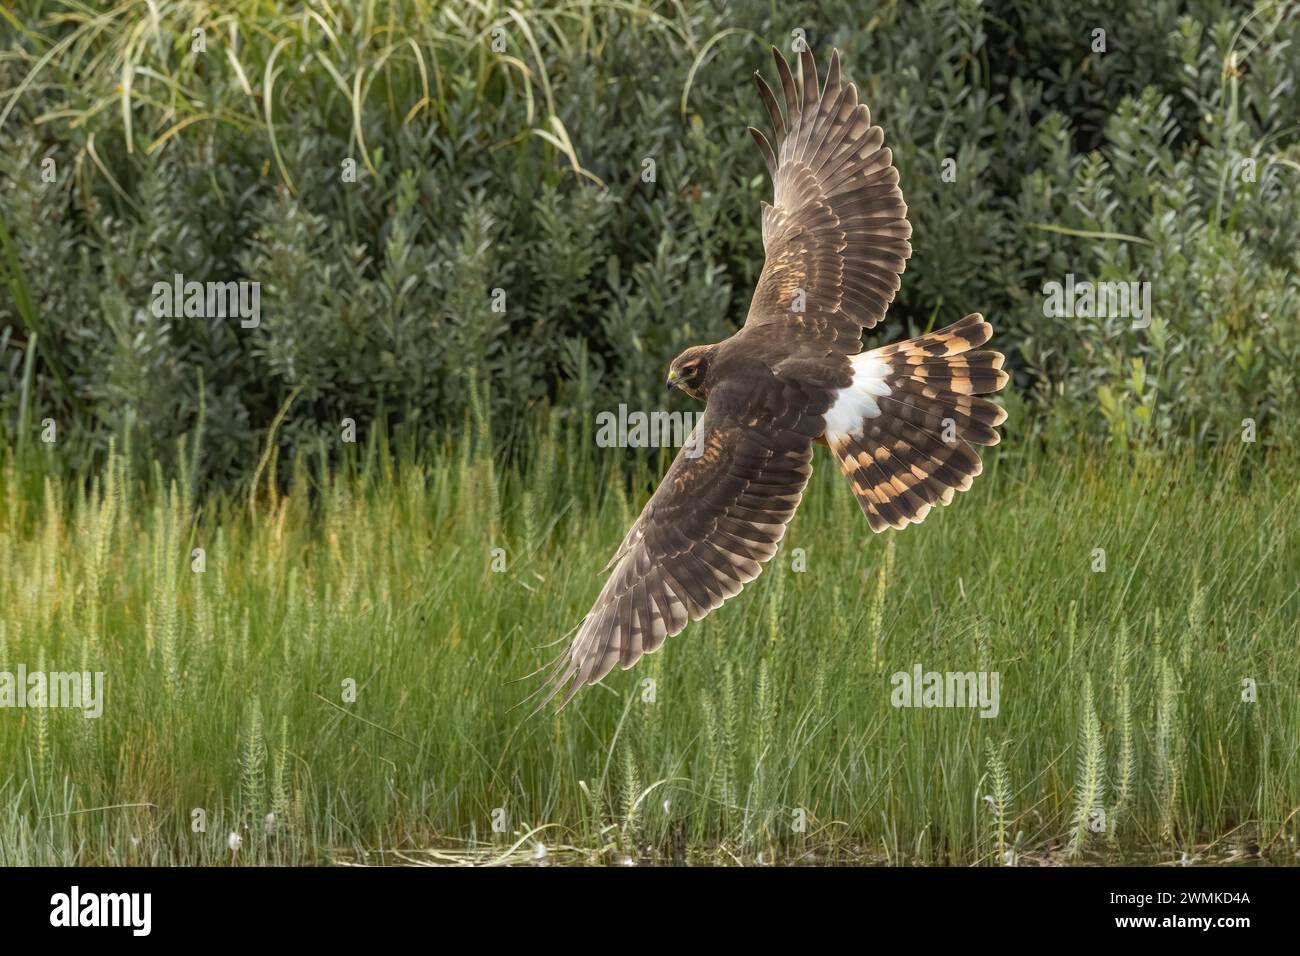 Oiseau à large envergure vole bas au-dessus de la végétation ; Alaska, États-Unis d'Amérique Banque D'Images